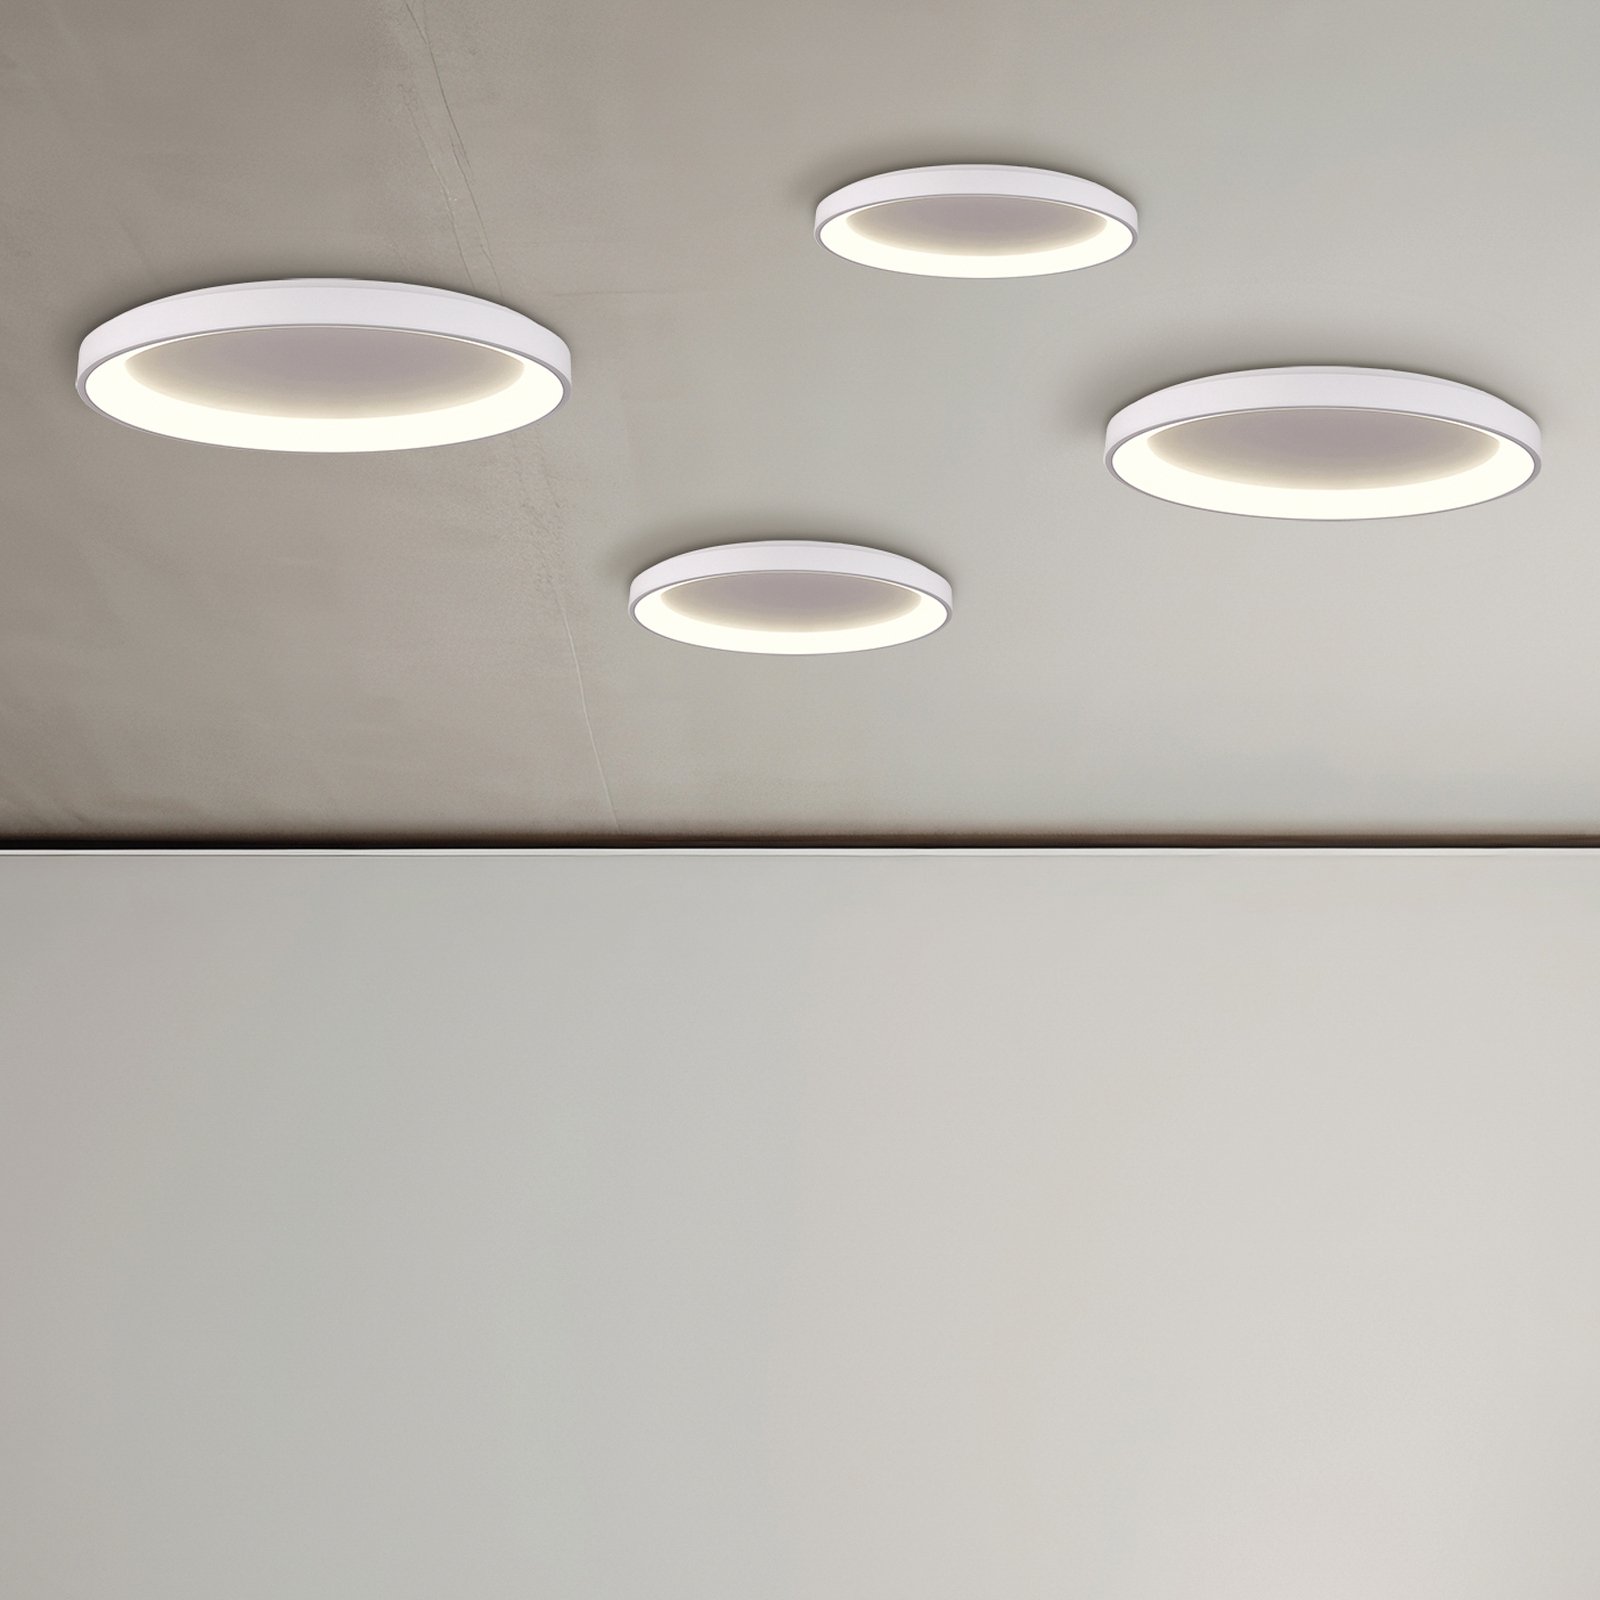 Grace LED-taklampa, vit, Ø 58 cm, Casambi, 50 W